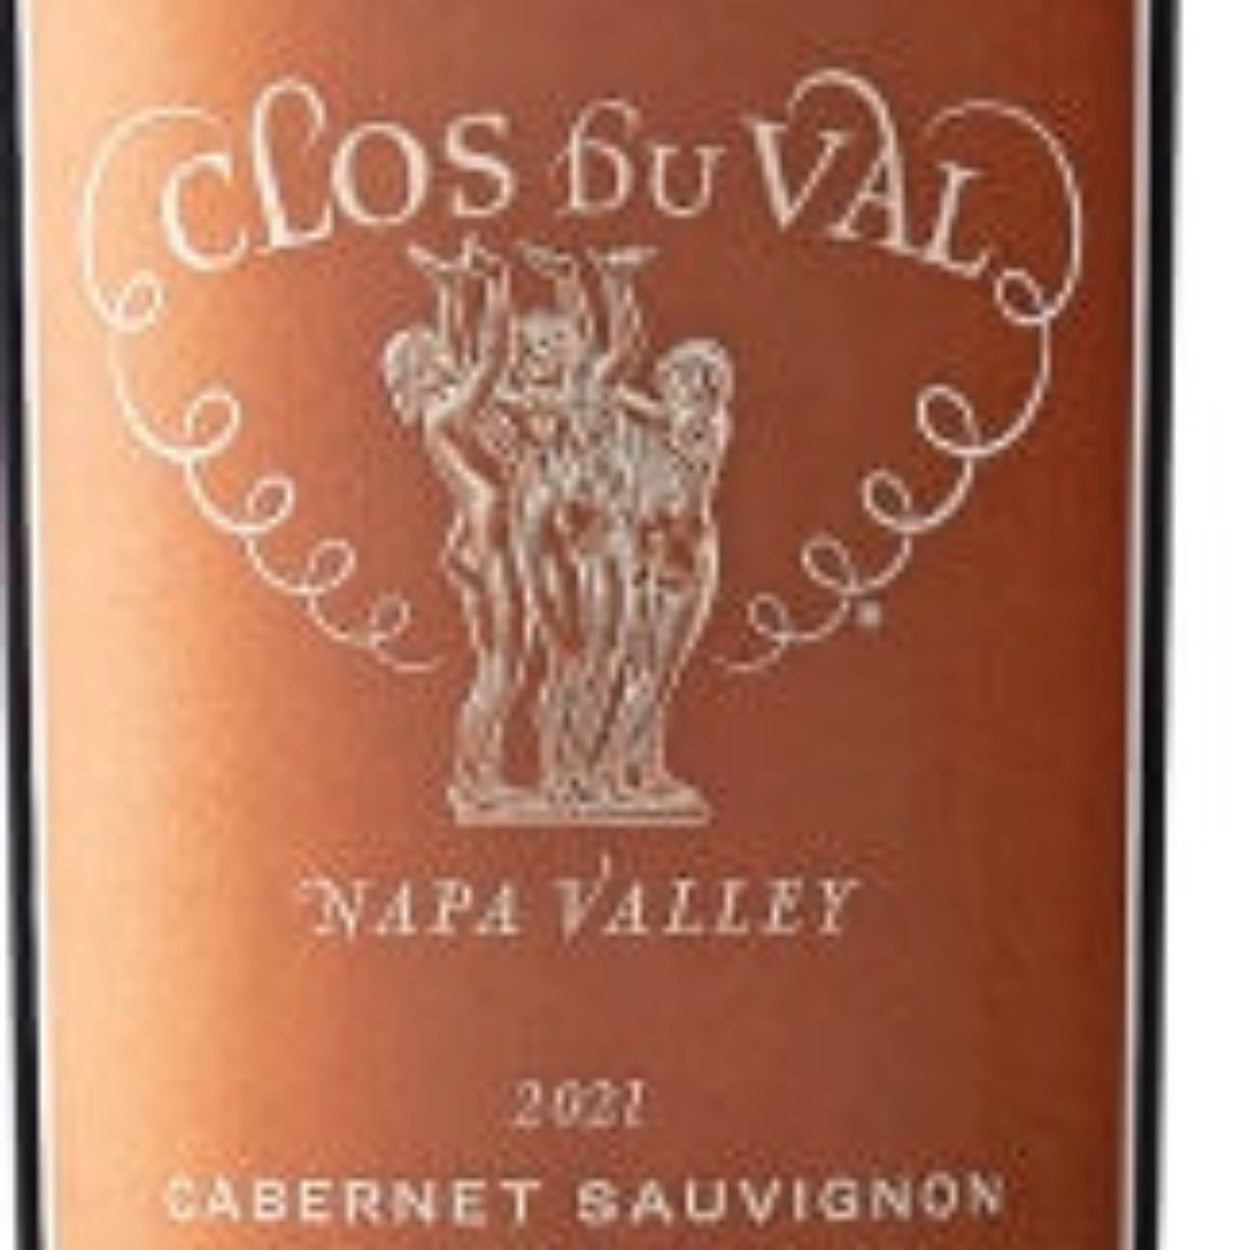 2021 Clos du Val Cabernet Sauvignon Napa Valley, USA - The Wine Connection